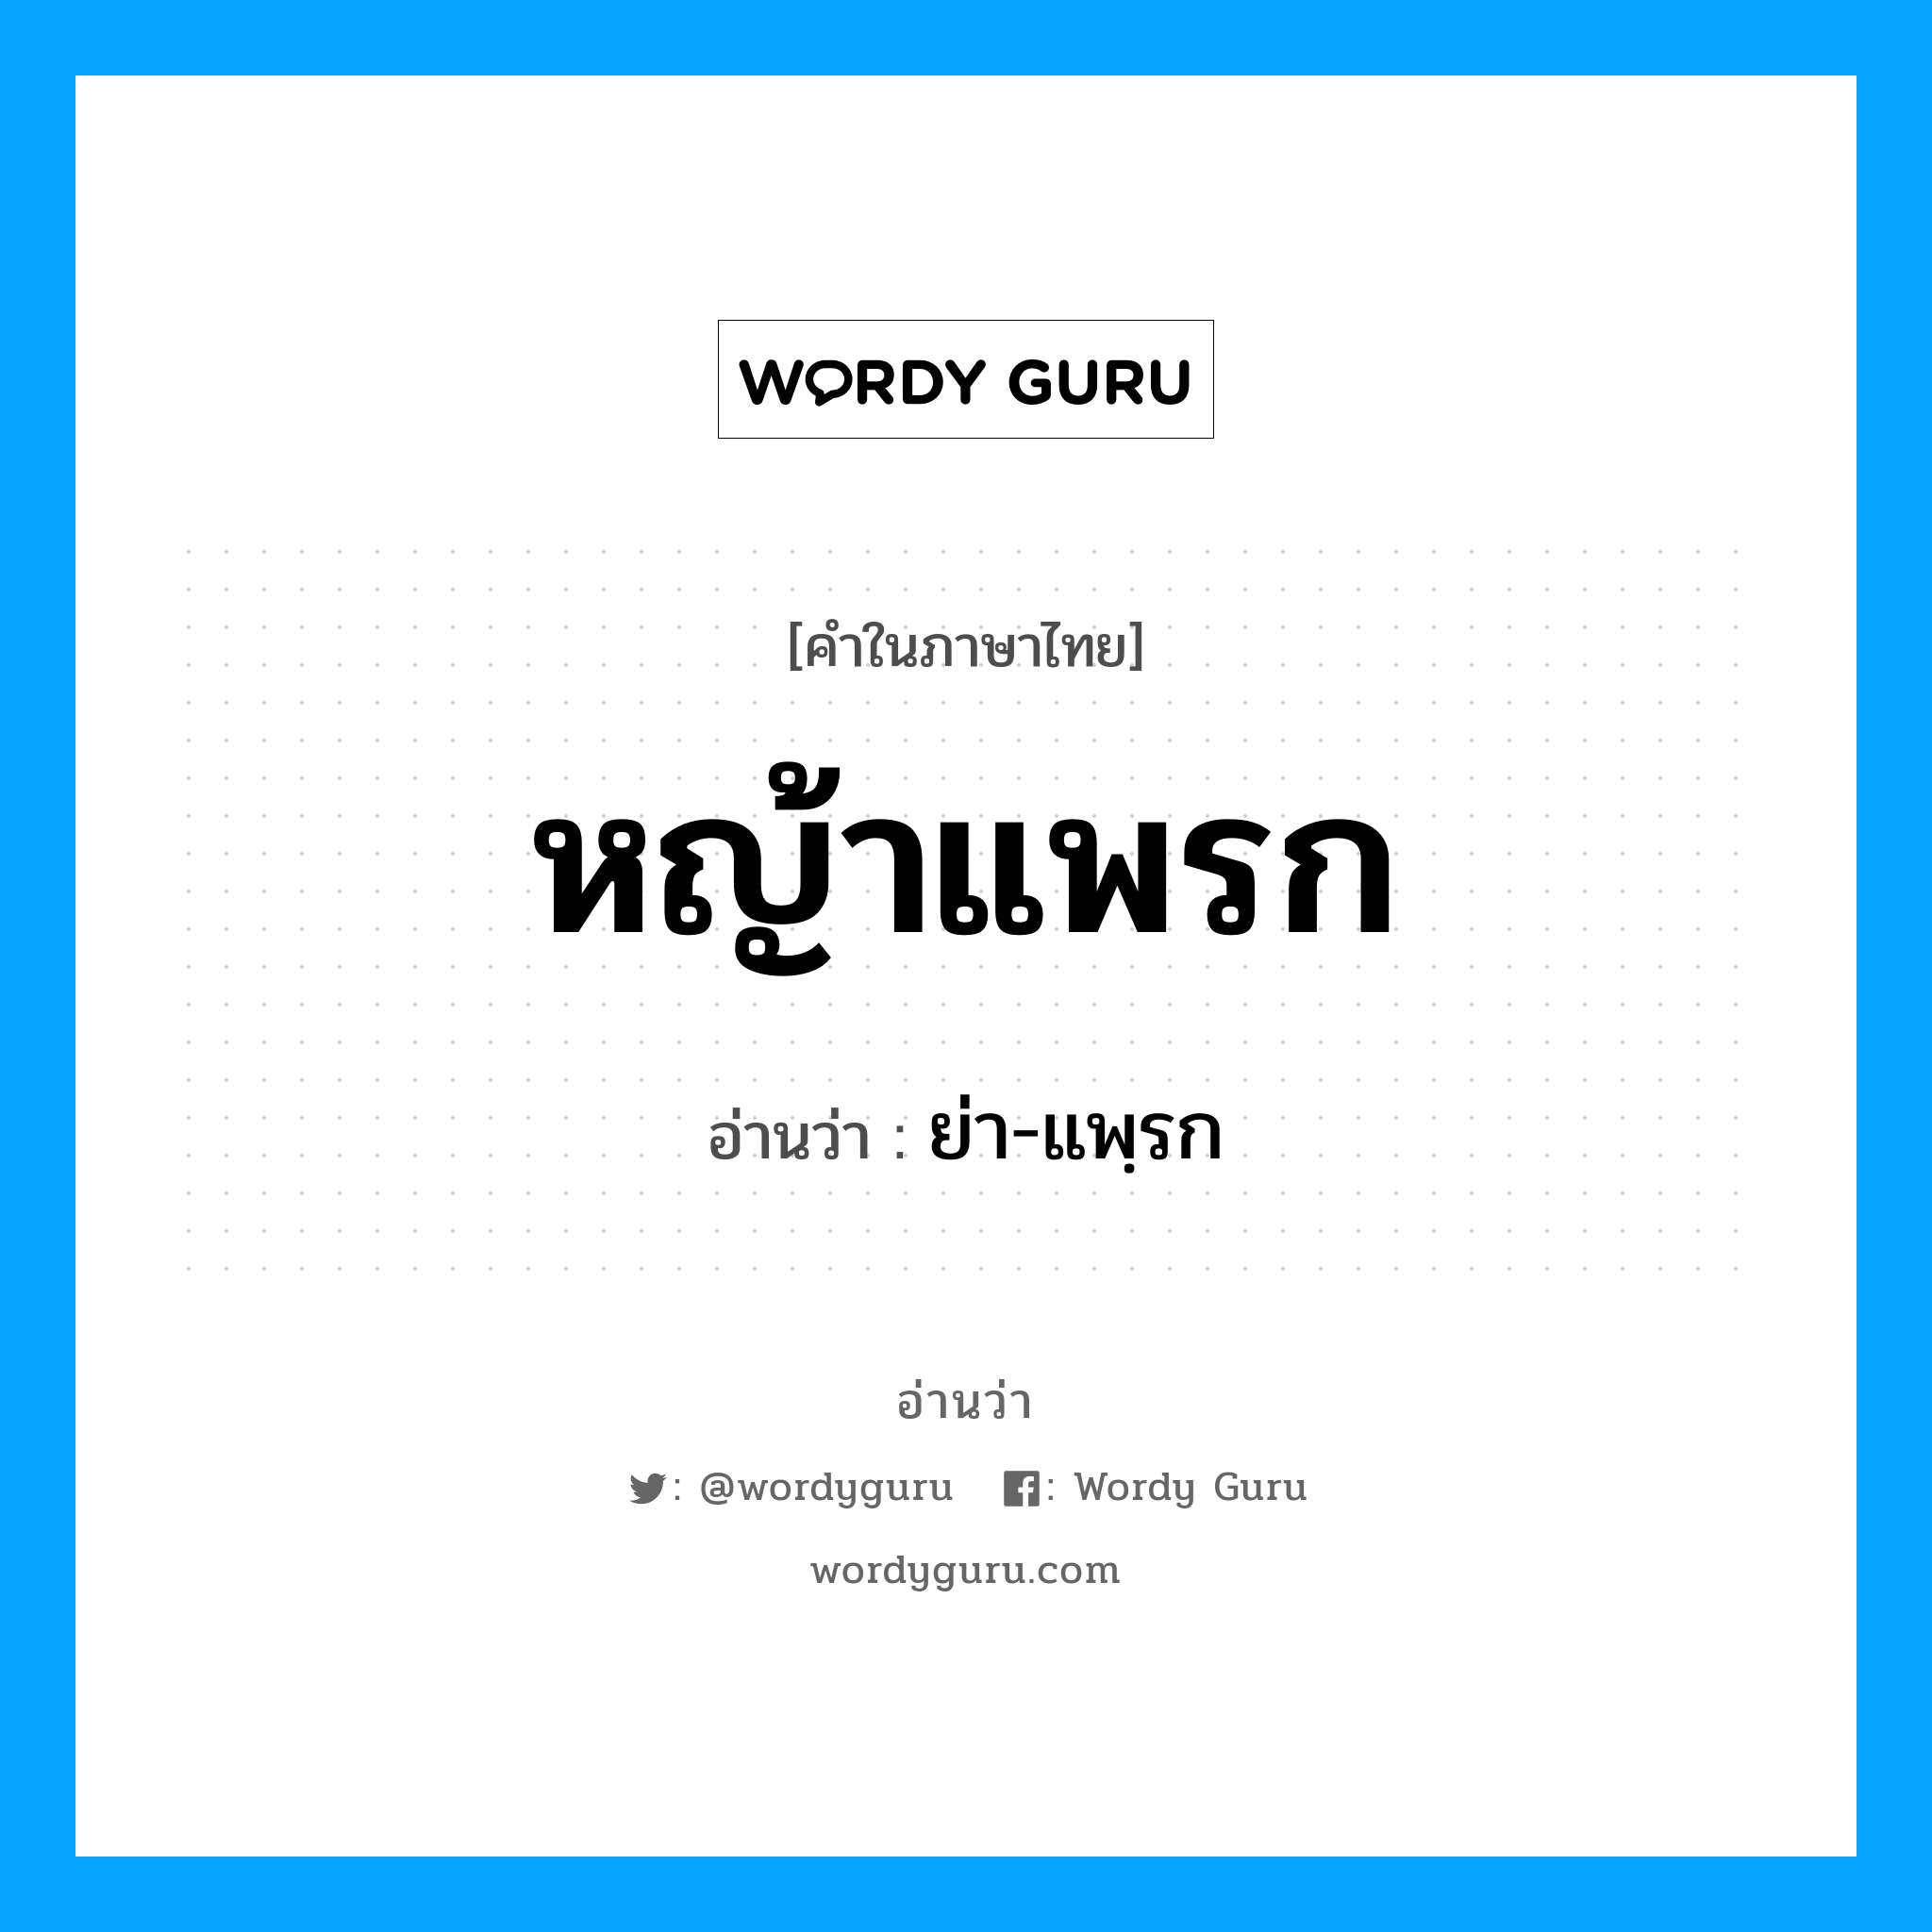 ย่า-แพฺรก เป็นคำอ่านของคำไหน?, คำในภาษาไทย ย่า-แพฺรก อ่านว่า หญ้าแพรก